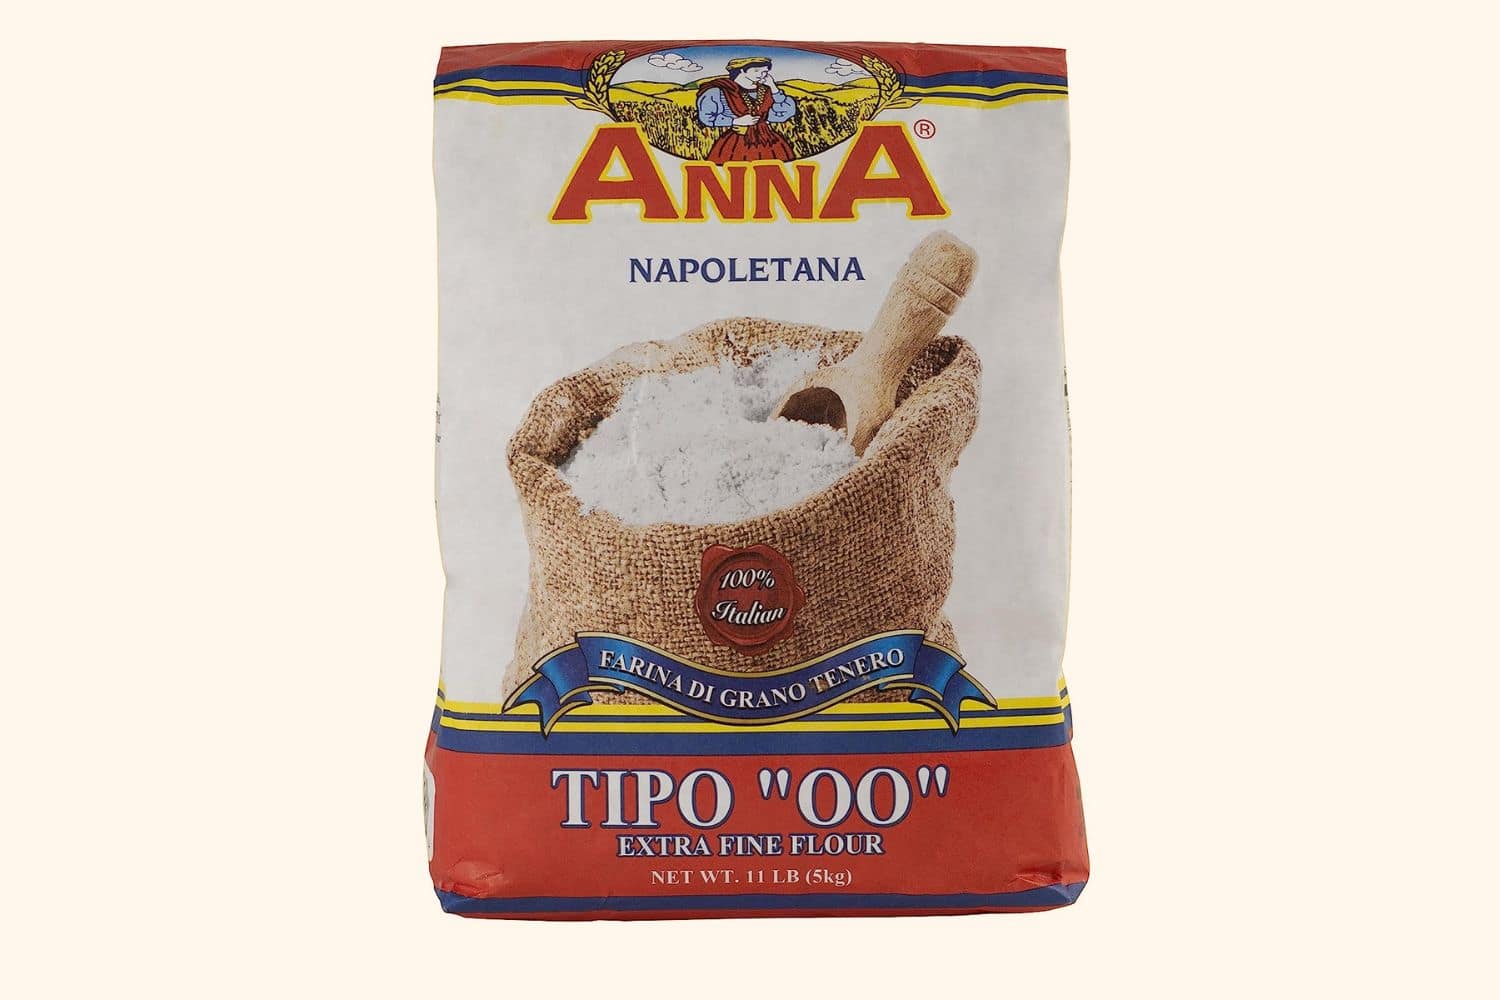 Cento’s Anna Napoletana Type “00” Extra Fine Flour